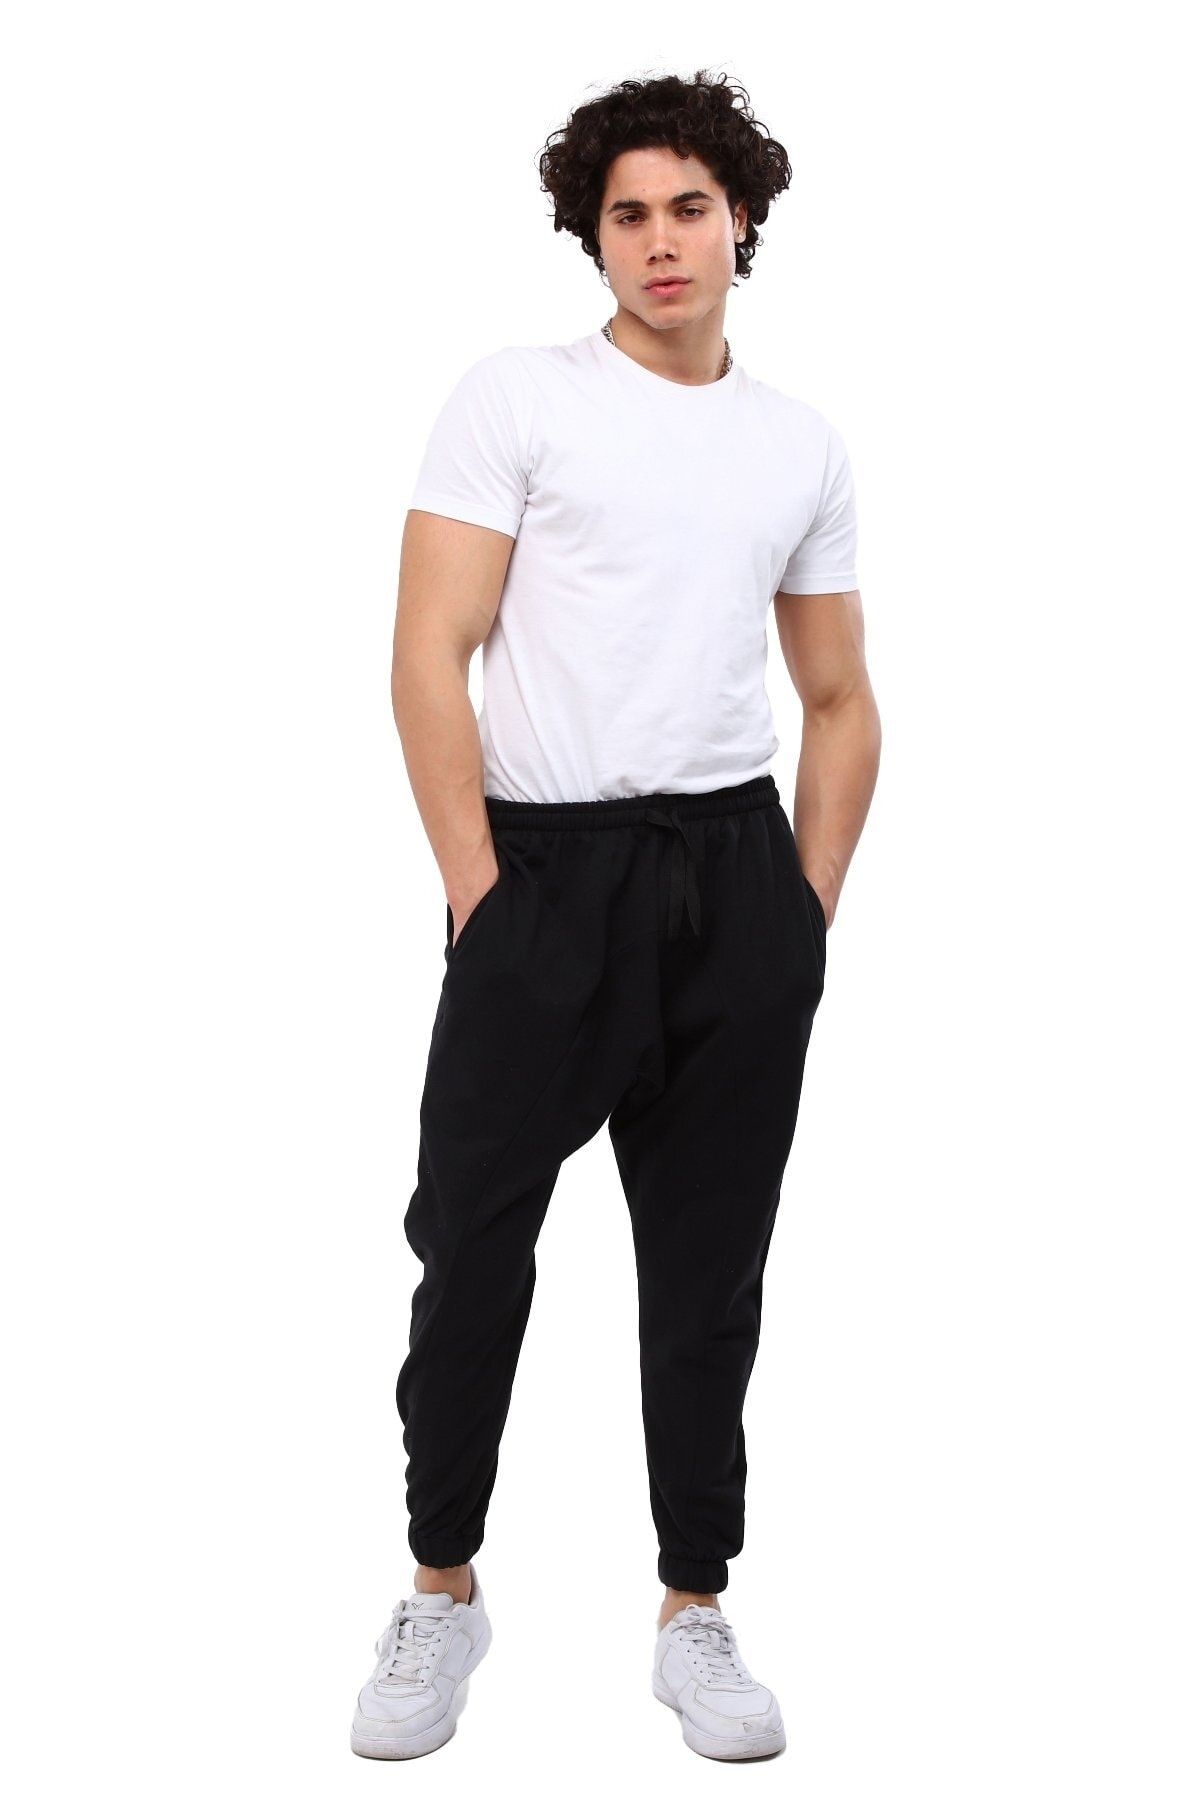 AUST GİYİM Aust Erkek Giyim Şalvar Tipi Eşofman Altı - Bol Kesim Rahat Şalvar Eşofman Altı - Siyah